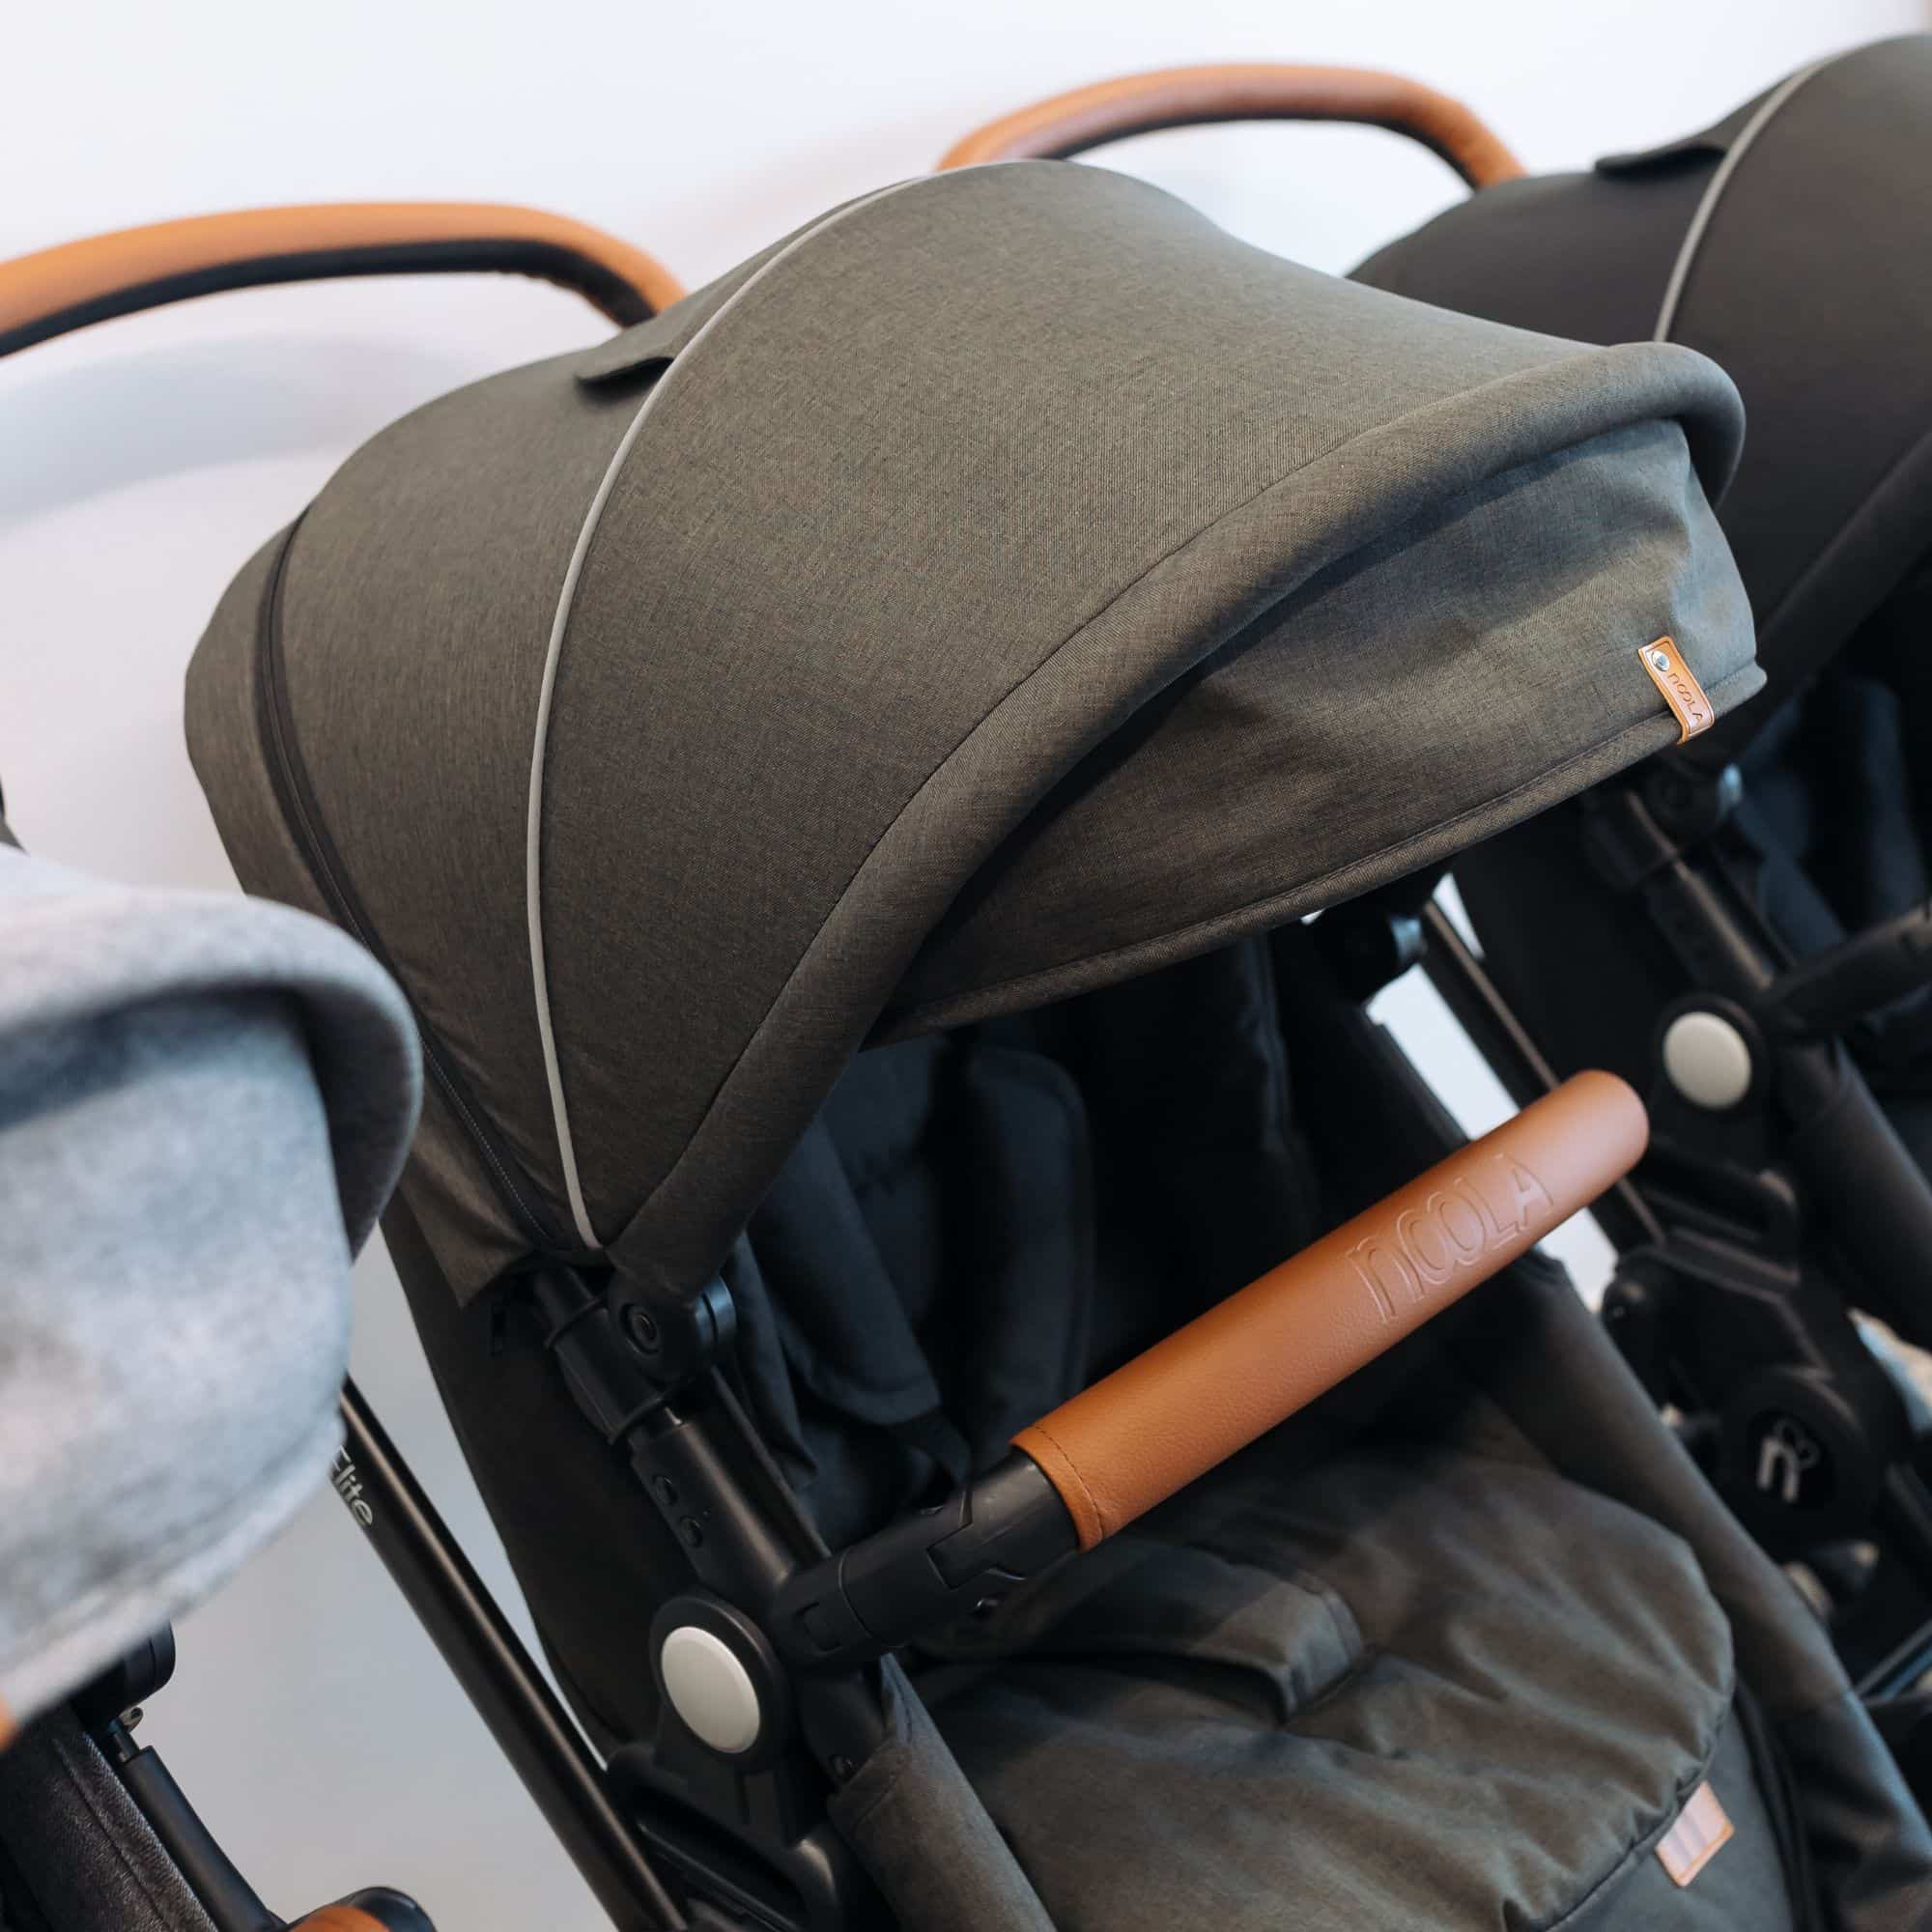 noola the elite 3in1 travel system midnight black baby stroller